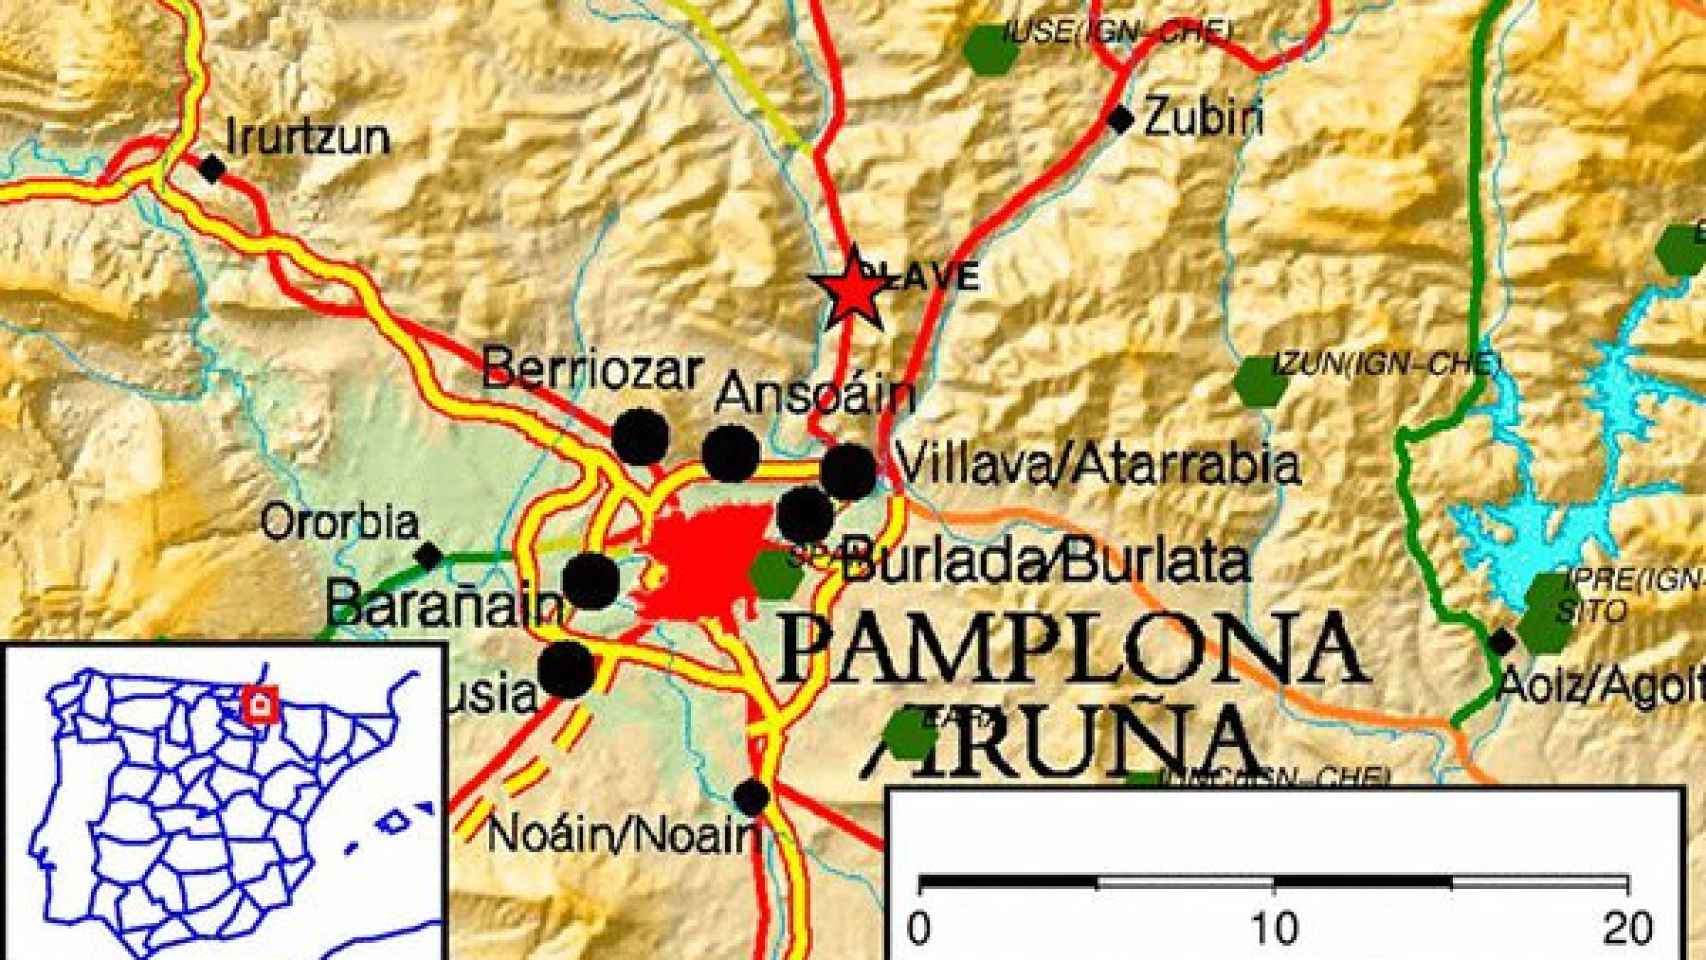 Los tres terremotos registrados esta mañana en Navarra / CG